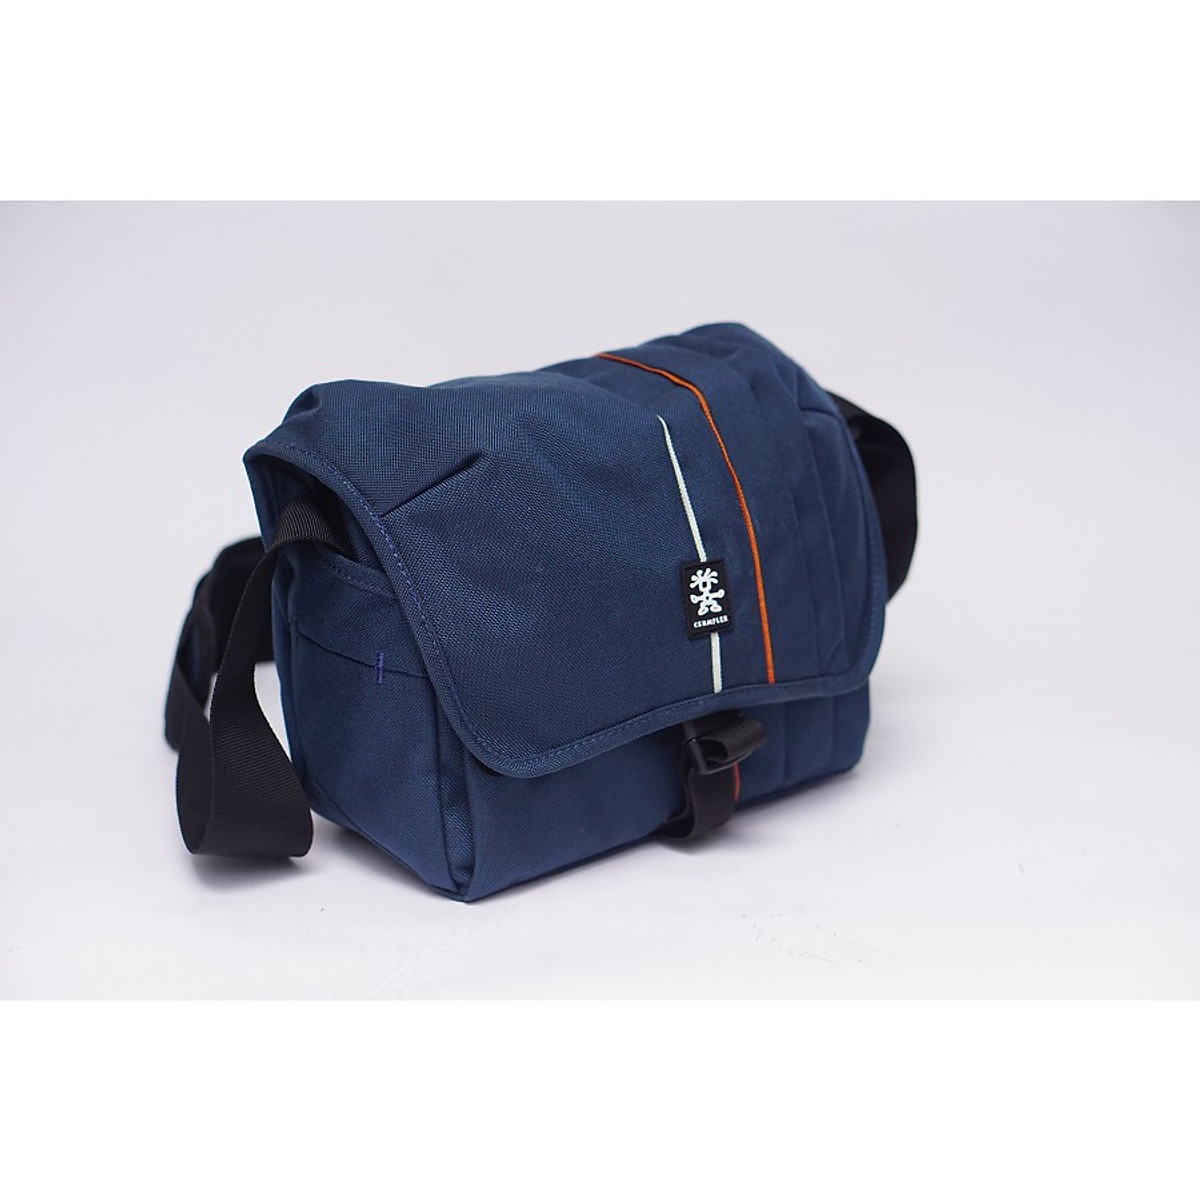 Túi đựng máy ảnh Crumpler Jackpack 4000 - Hàng Chính Hãng - Màu xanh than |  LeeCamera | Tiki